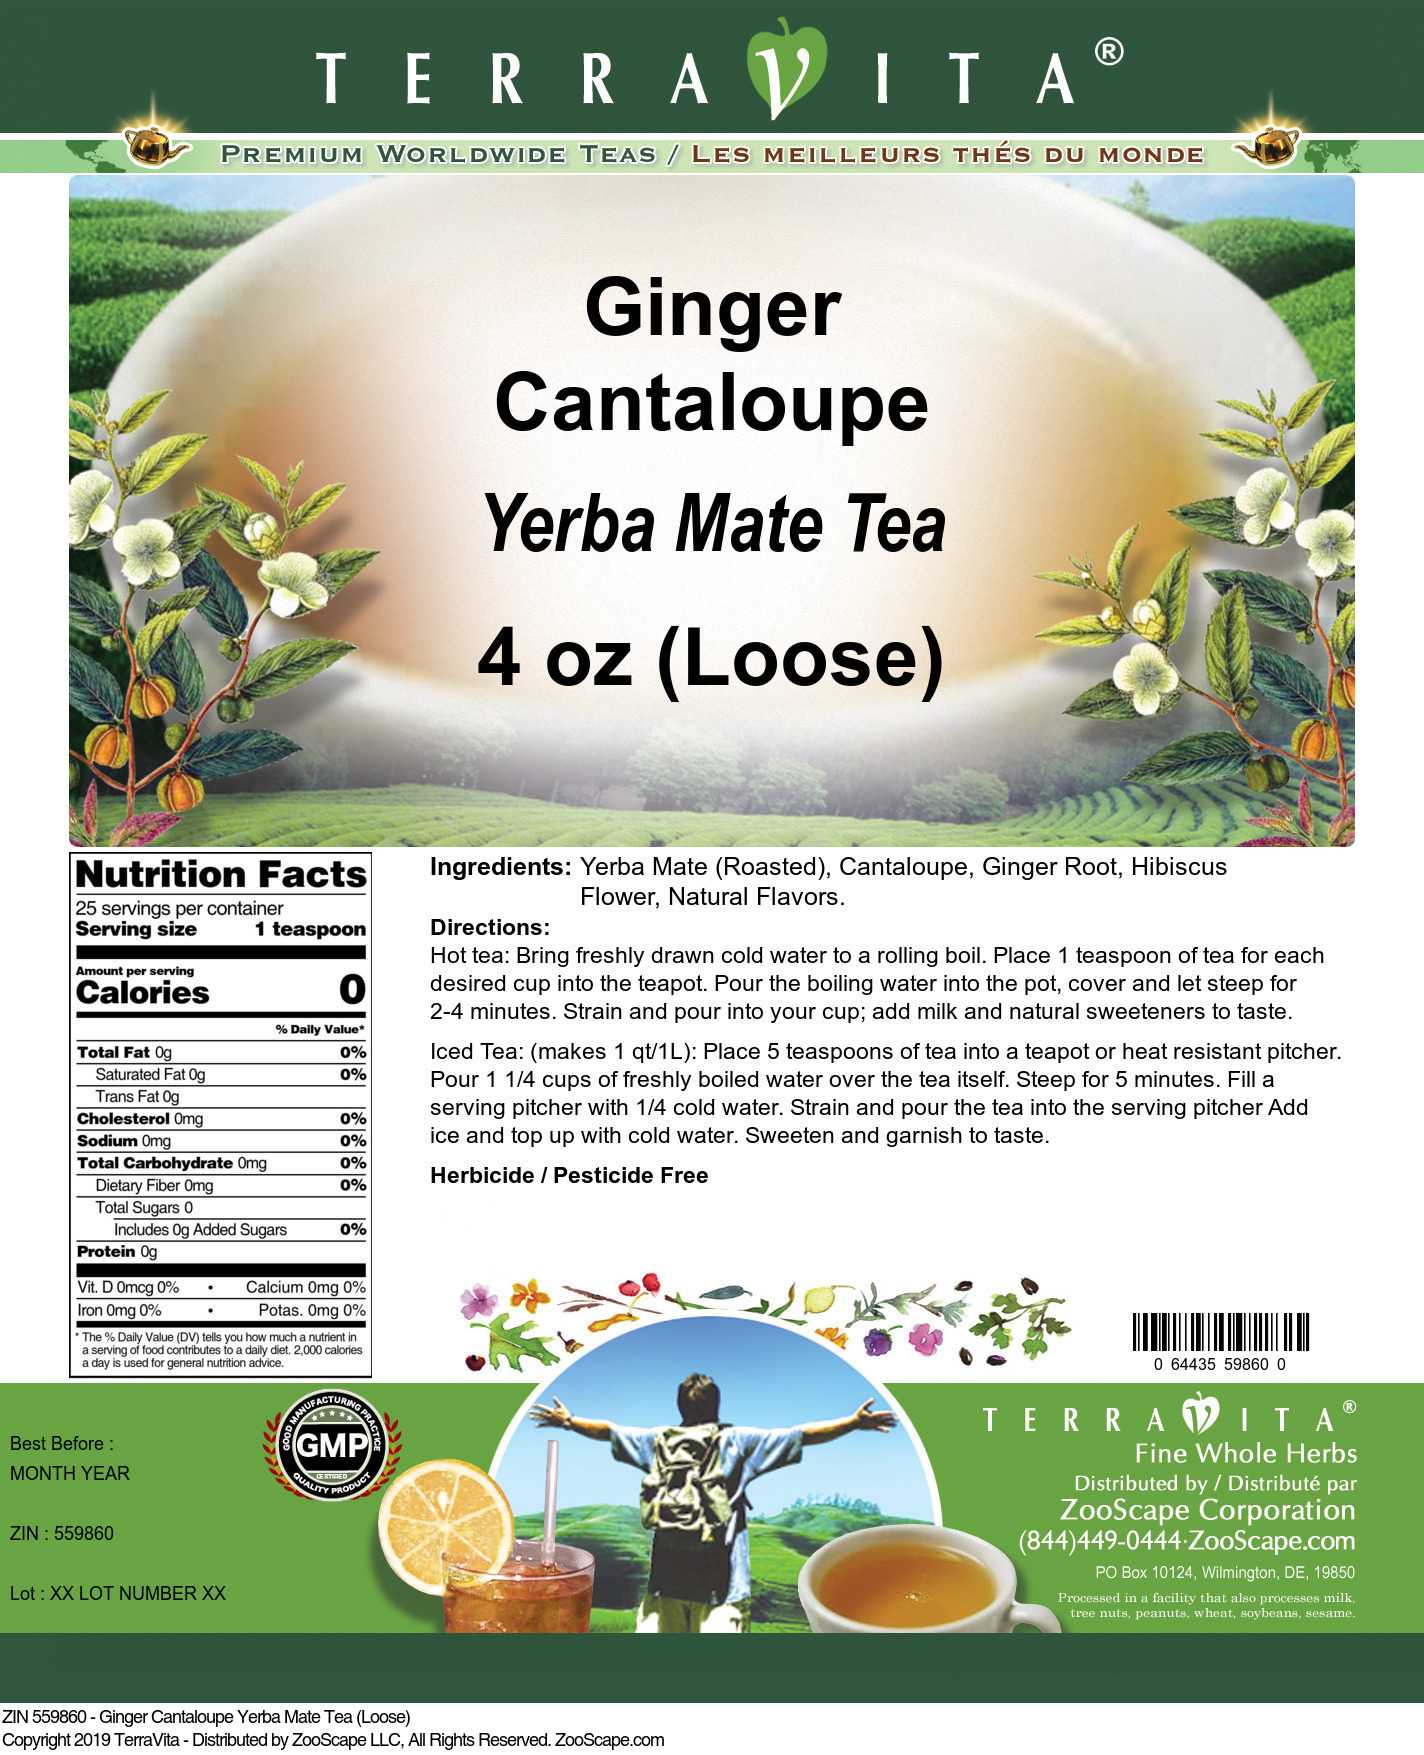 Ginger Cantaloupe Yerba Mate Tea (Loose) - Label